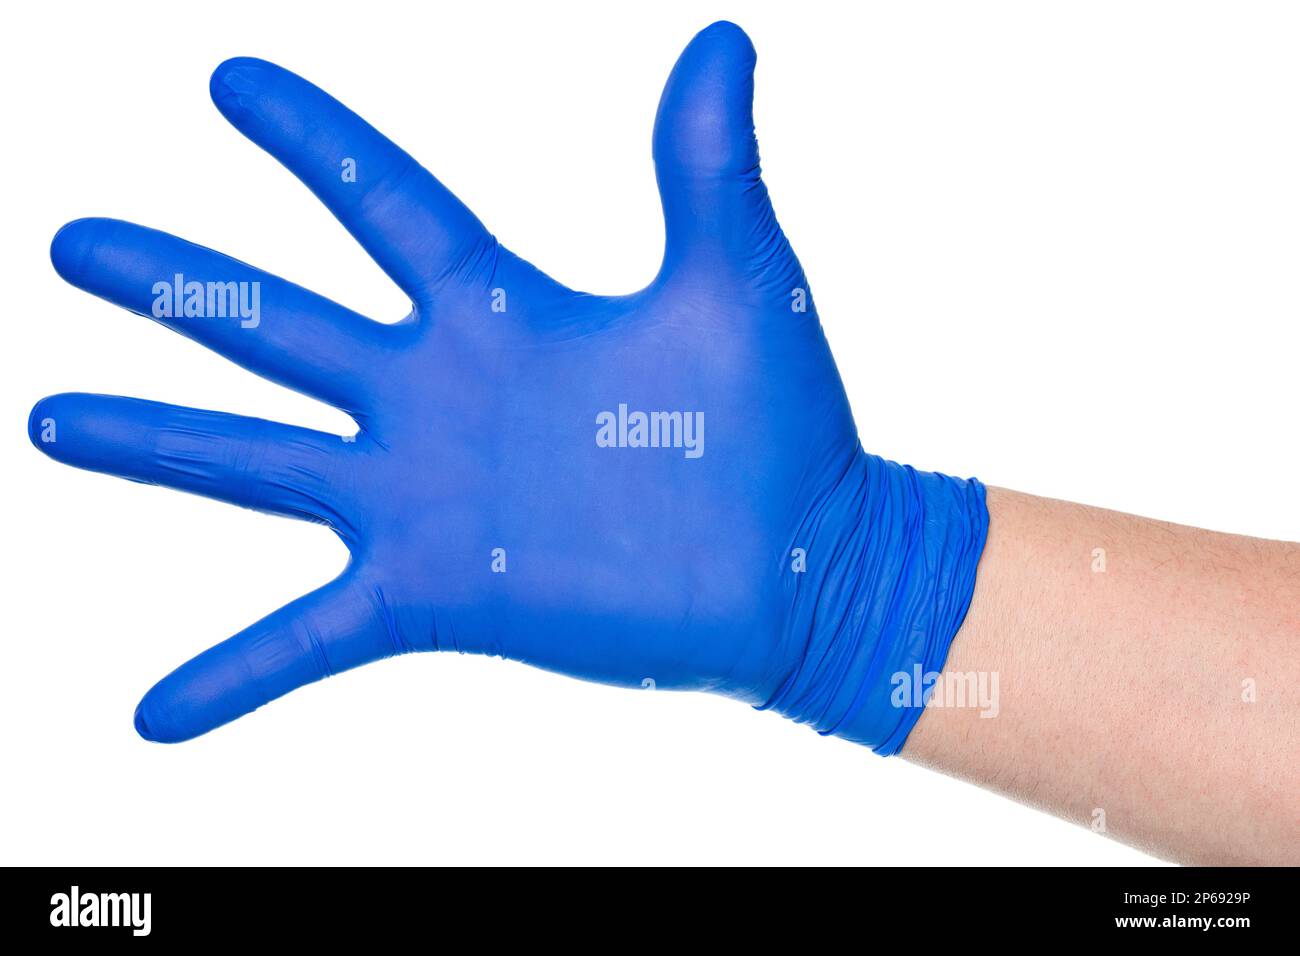 Cosecha mano irreconocible de persona en guante azul de látex que muestra la palma abierta sobre fondo blanco Foto de stock